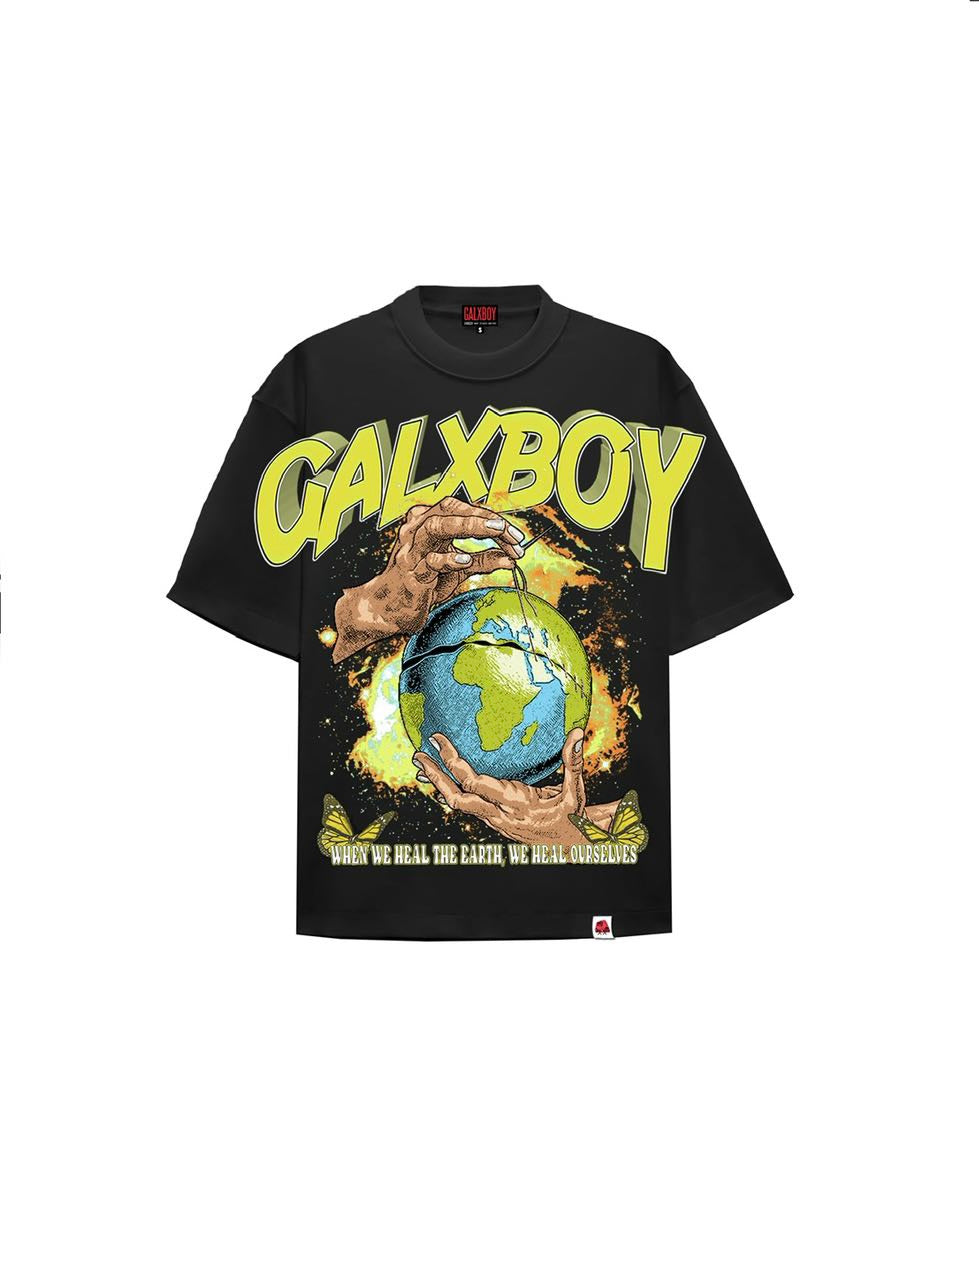 galxboy clothing